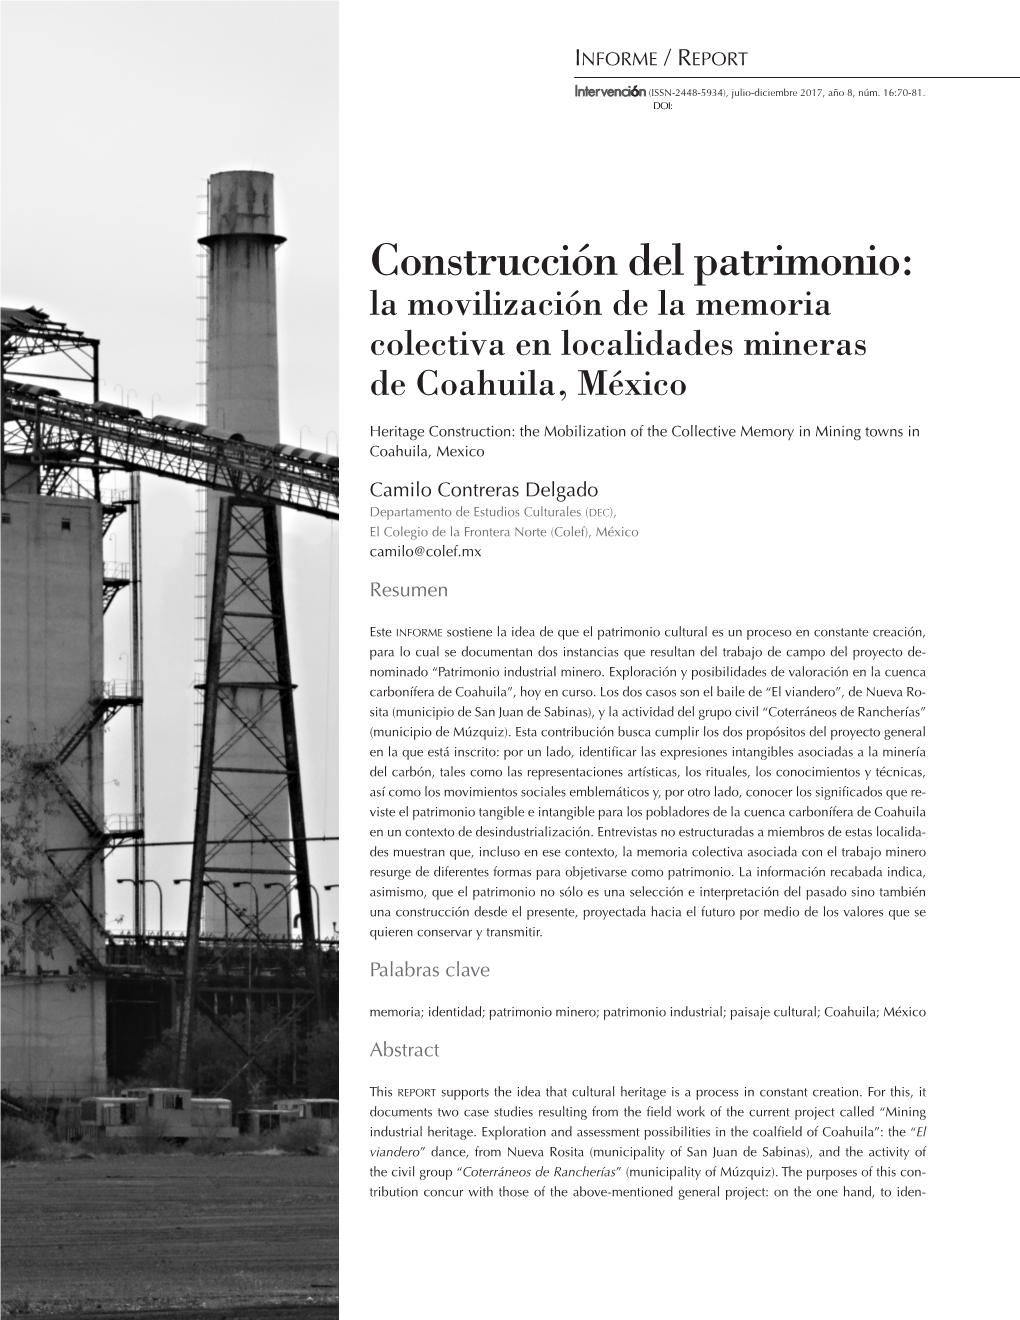 Construcción Del Patrimonio: La Movilización De La Memoria Colectiva En Localidades Mineras De Coahuila, México